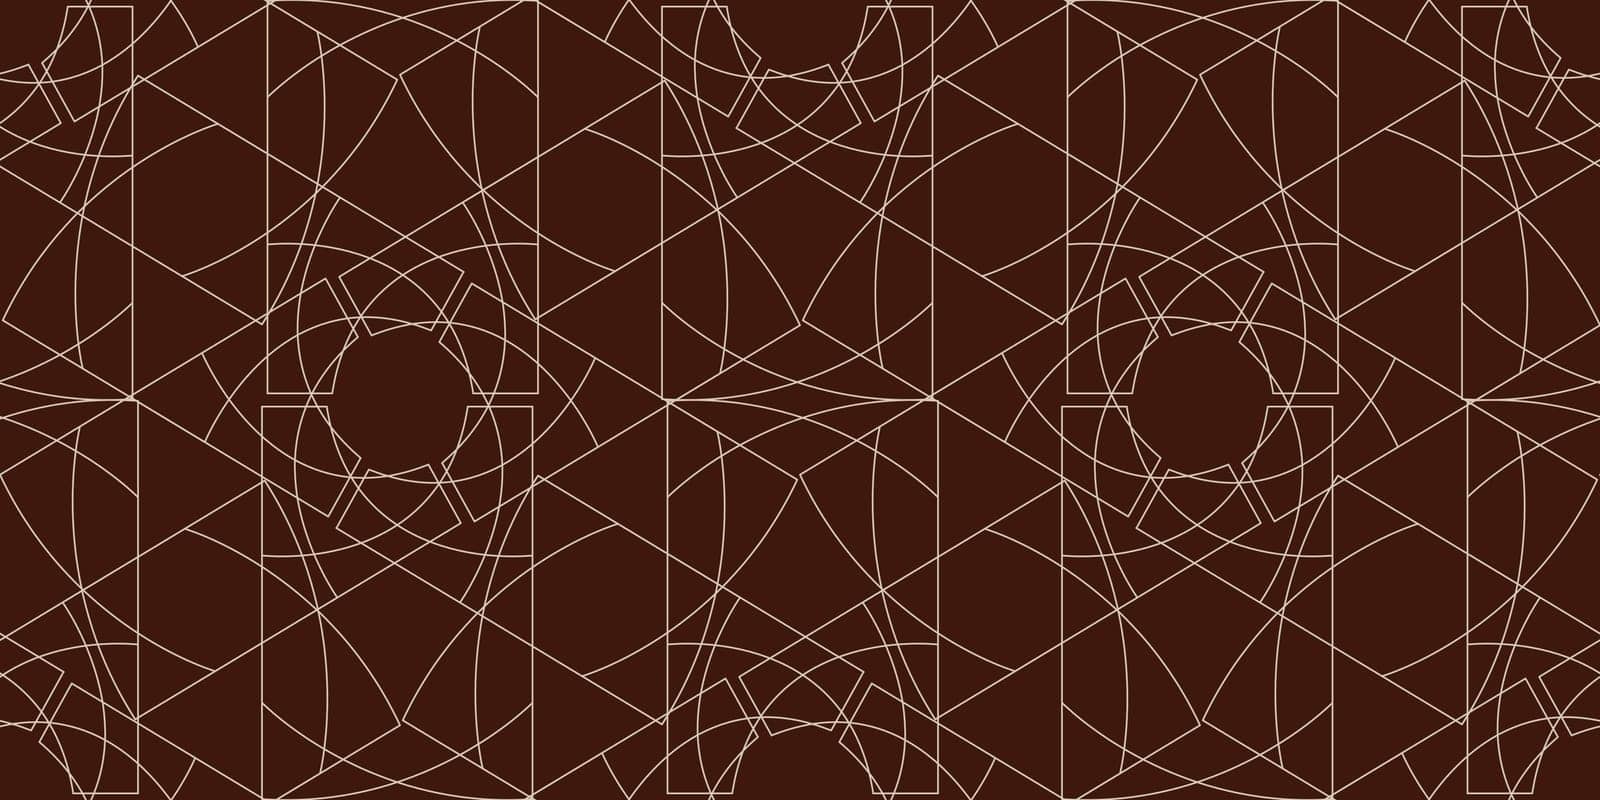 Symmetrical geometric pattern in brown on wood flooring by Deepika_Praveen